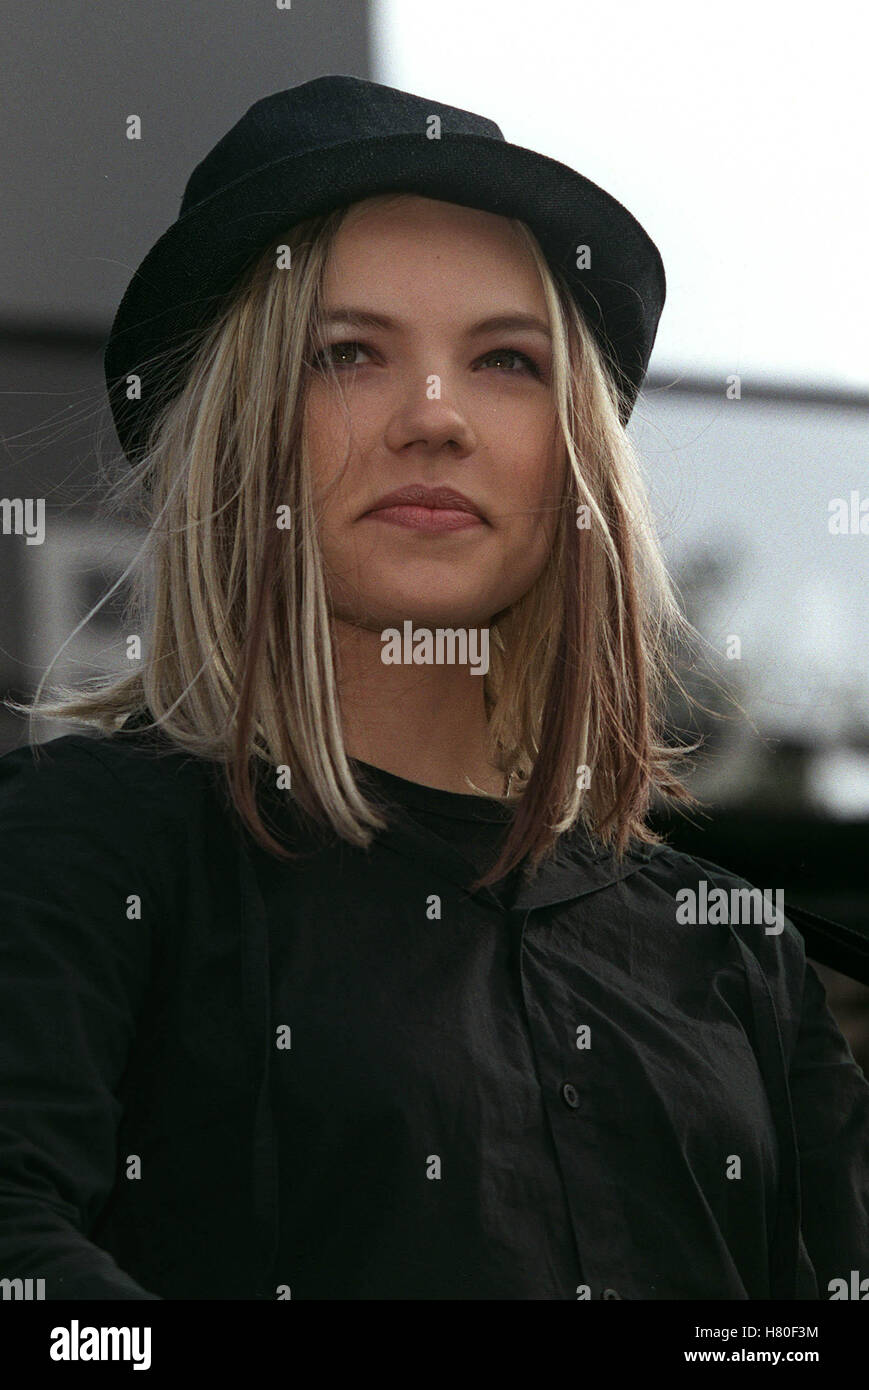 LENE MARLIN 24 August 1999 Stock Photo - Alamy